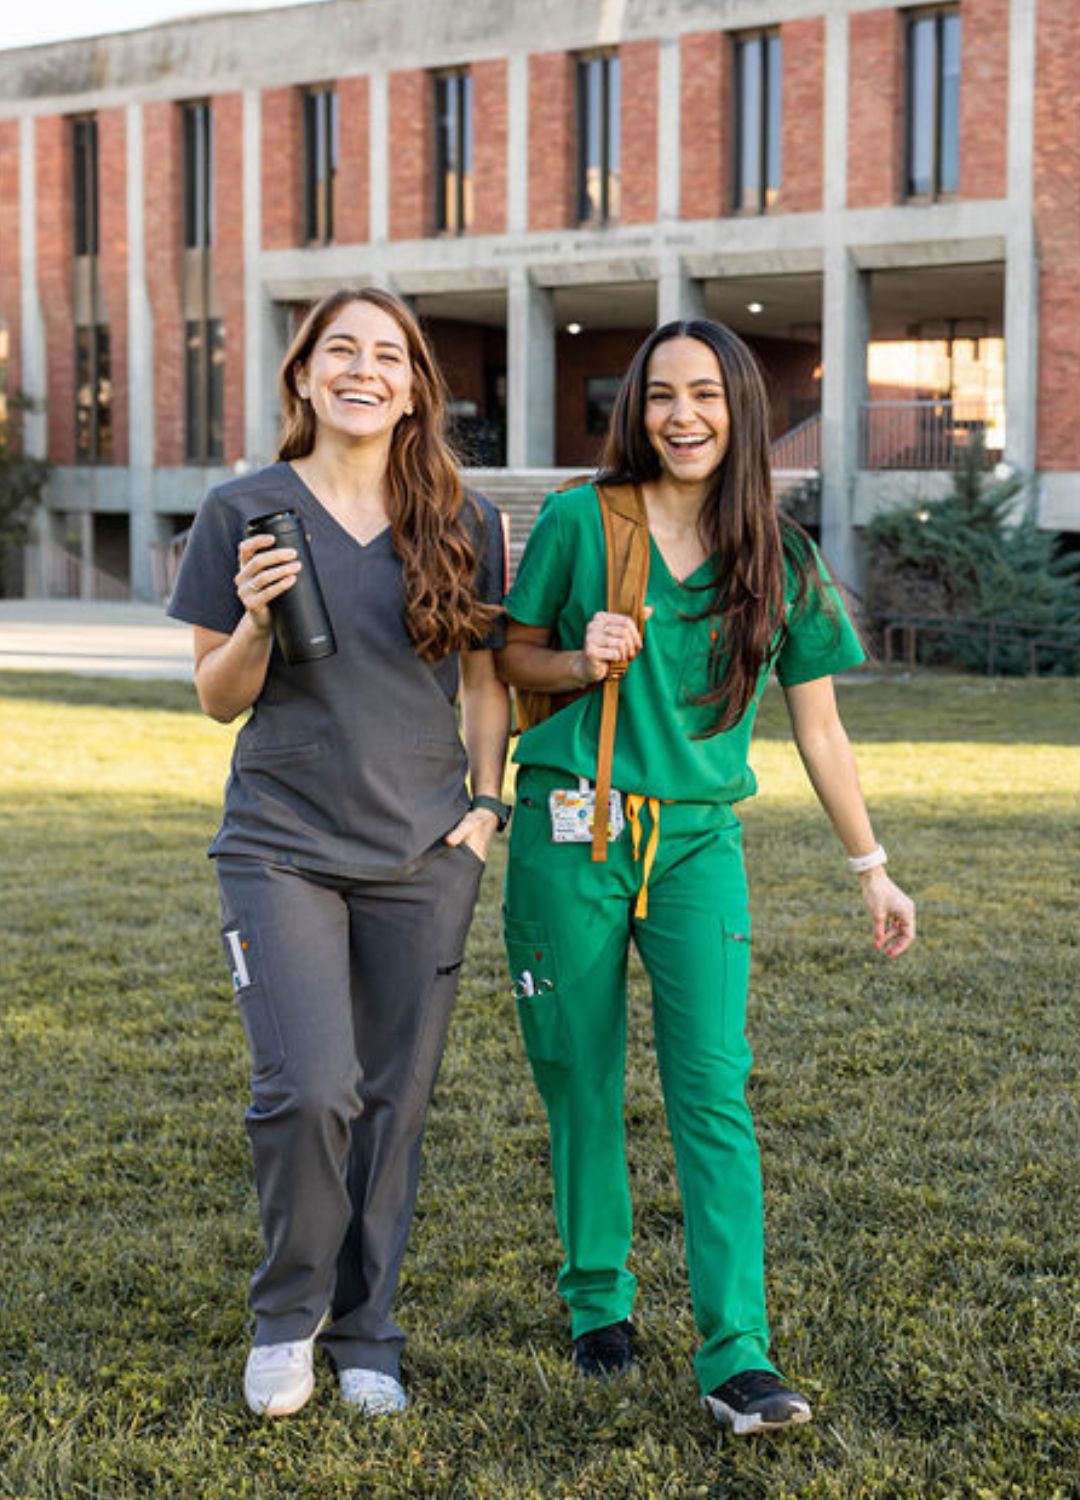 Women's dark green scrubs walking outside.